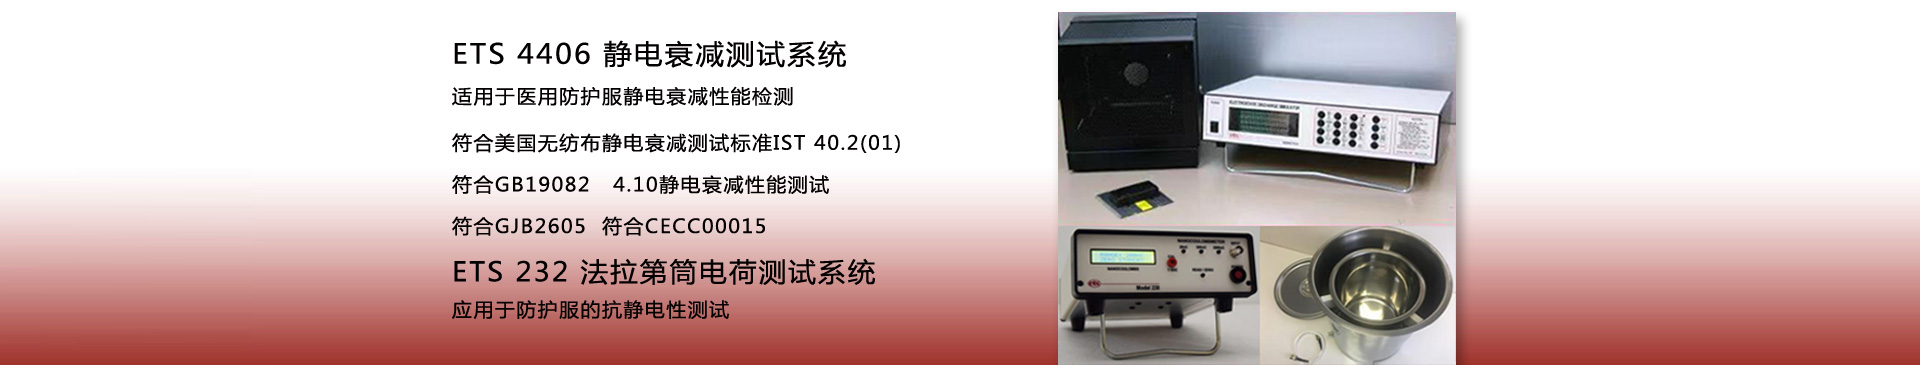 ETS 4406 静电衰减测试系统